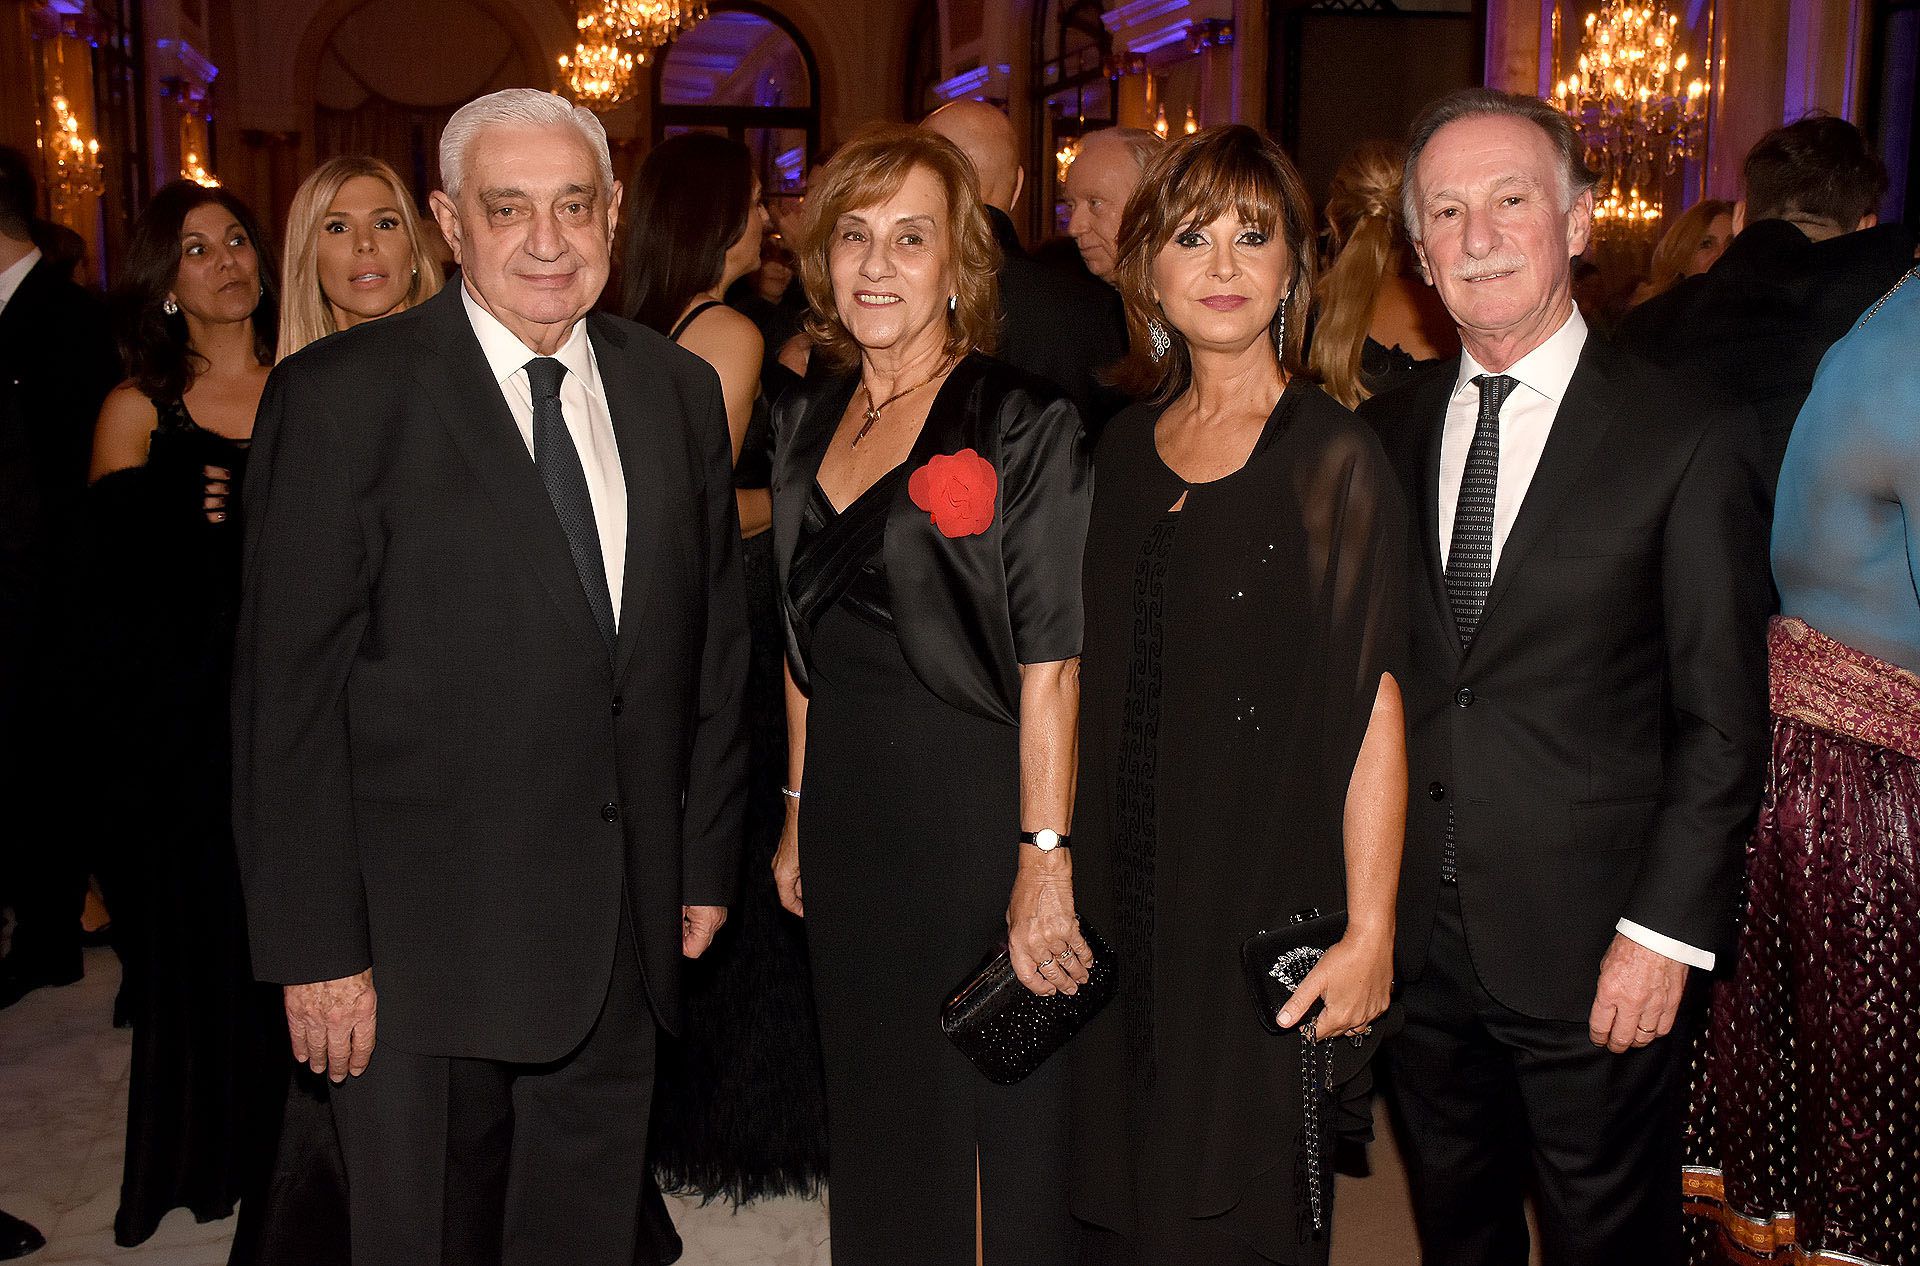 El presidente de la Bolsa de Comercio de Buenos Aires, Adelmo Gabbi, junto a Gustavo Weiss, titular de CAMARCO, y sus esposas